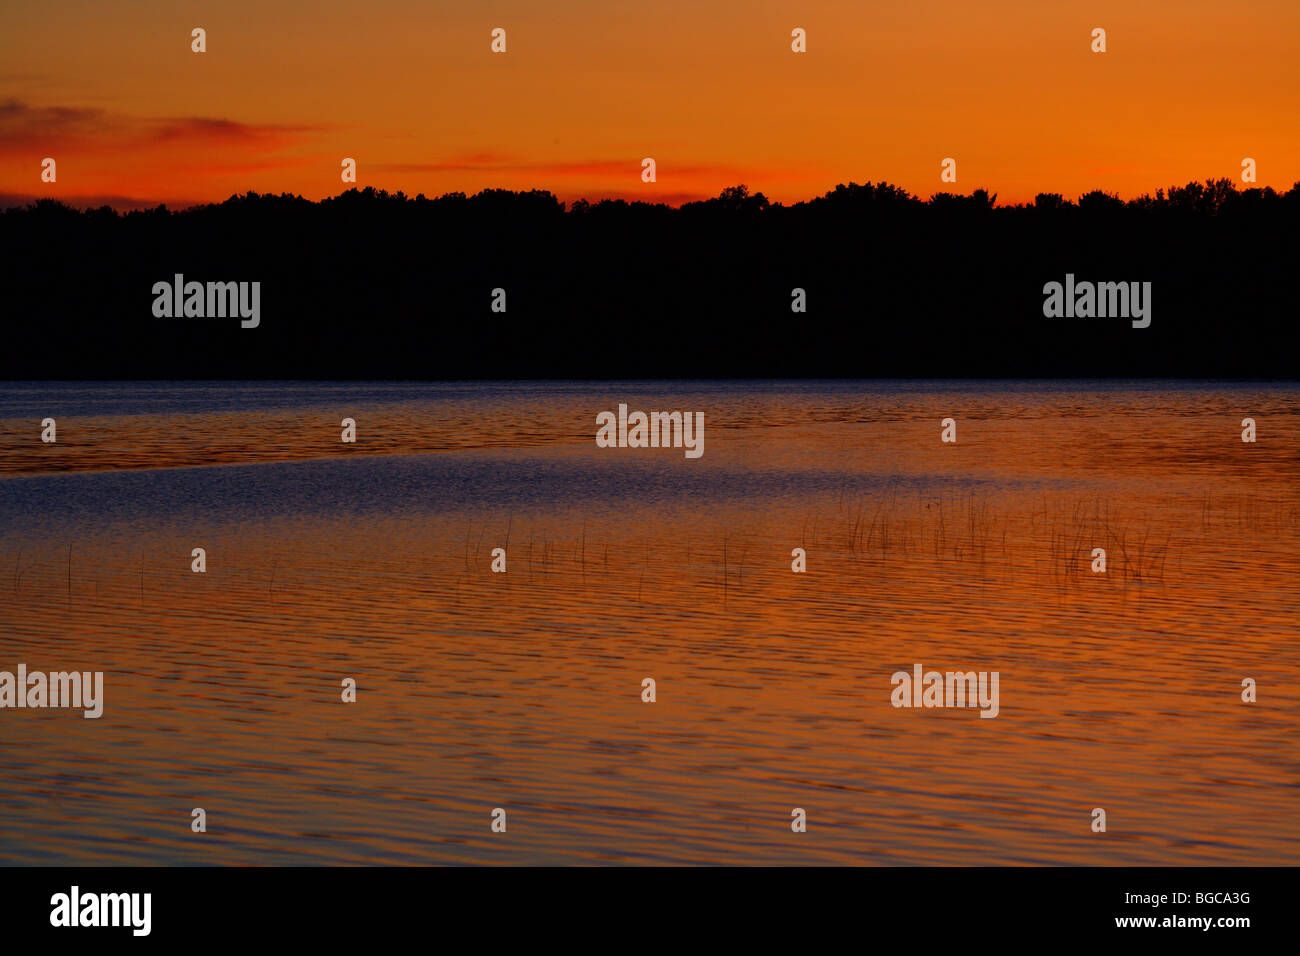 sunset on lake in minnesota summer Stock Photo